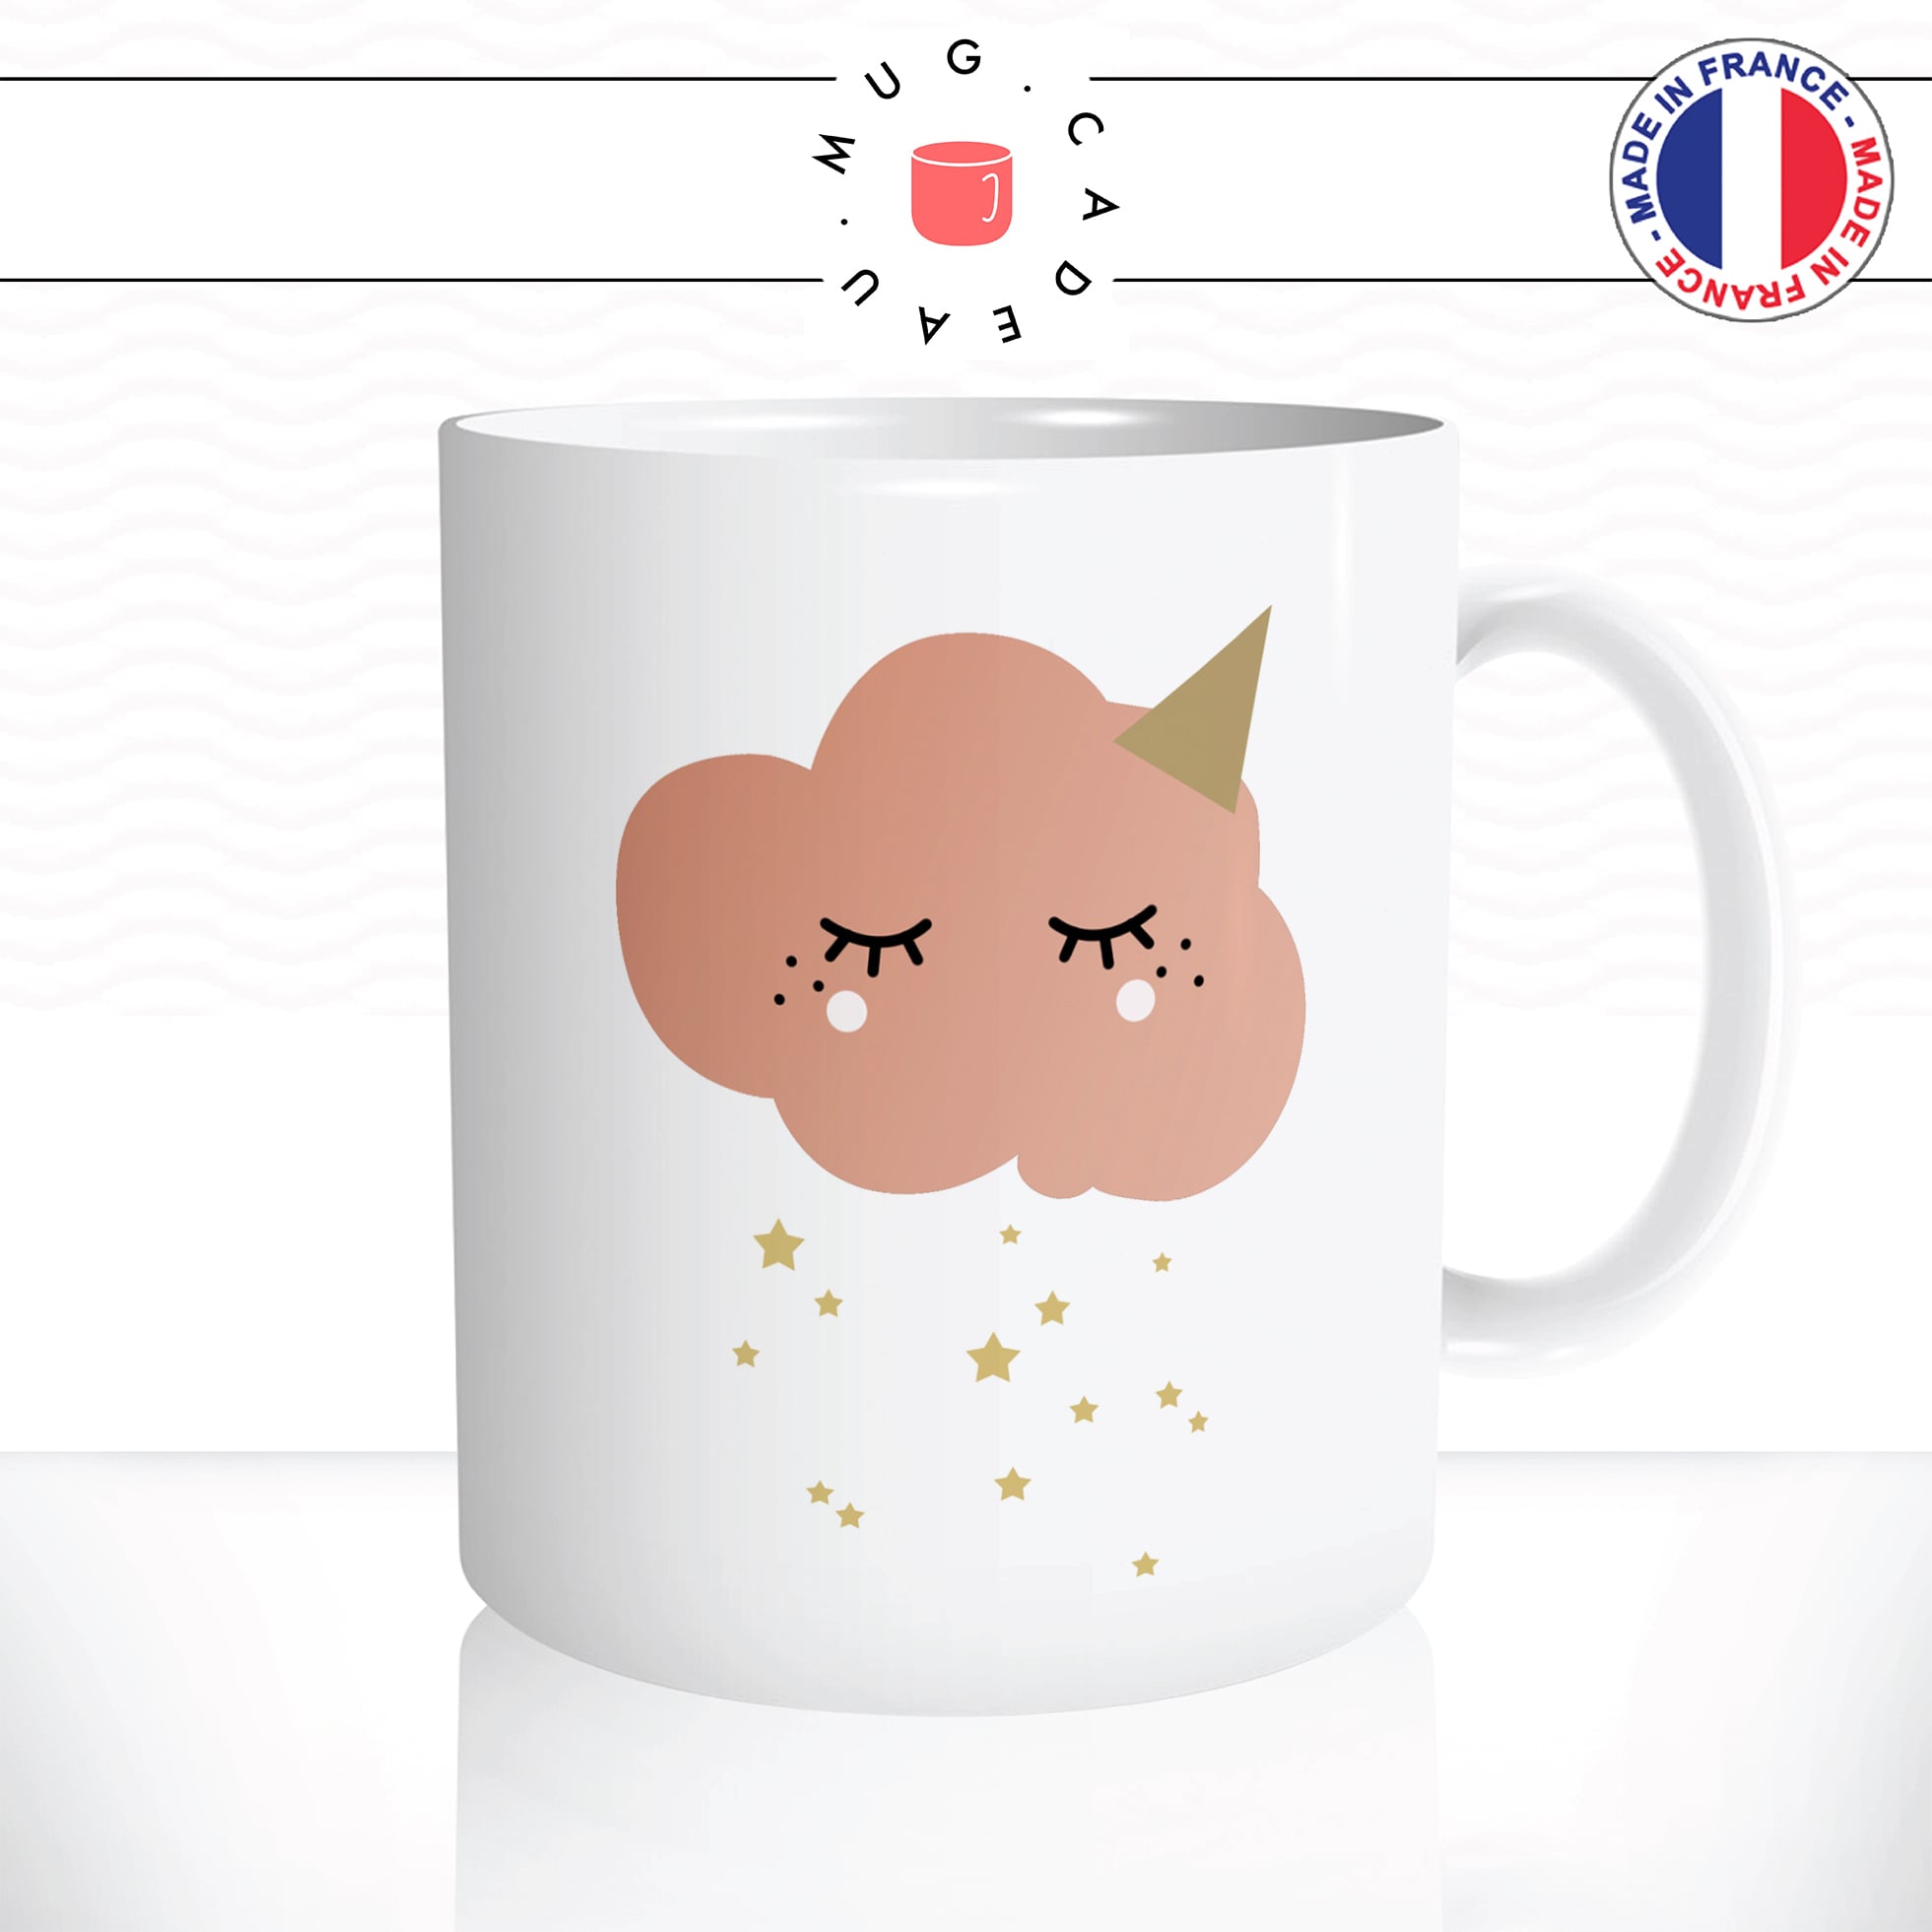 mug-tasse-enfant-nuage-rose-etoiles-chapeau-kawaii-mignon-météo-fun-humour-café-thé-idée-cadeau-original-personnalisable2-min